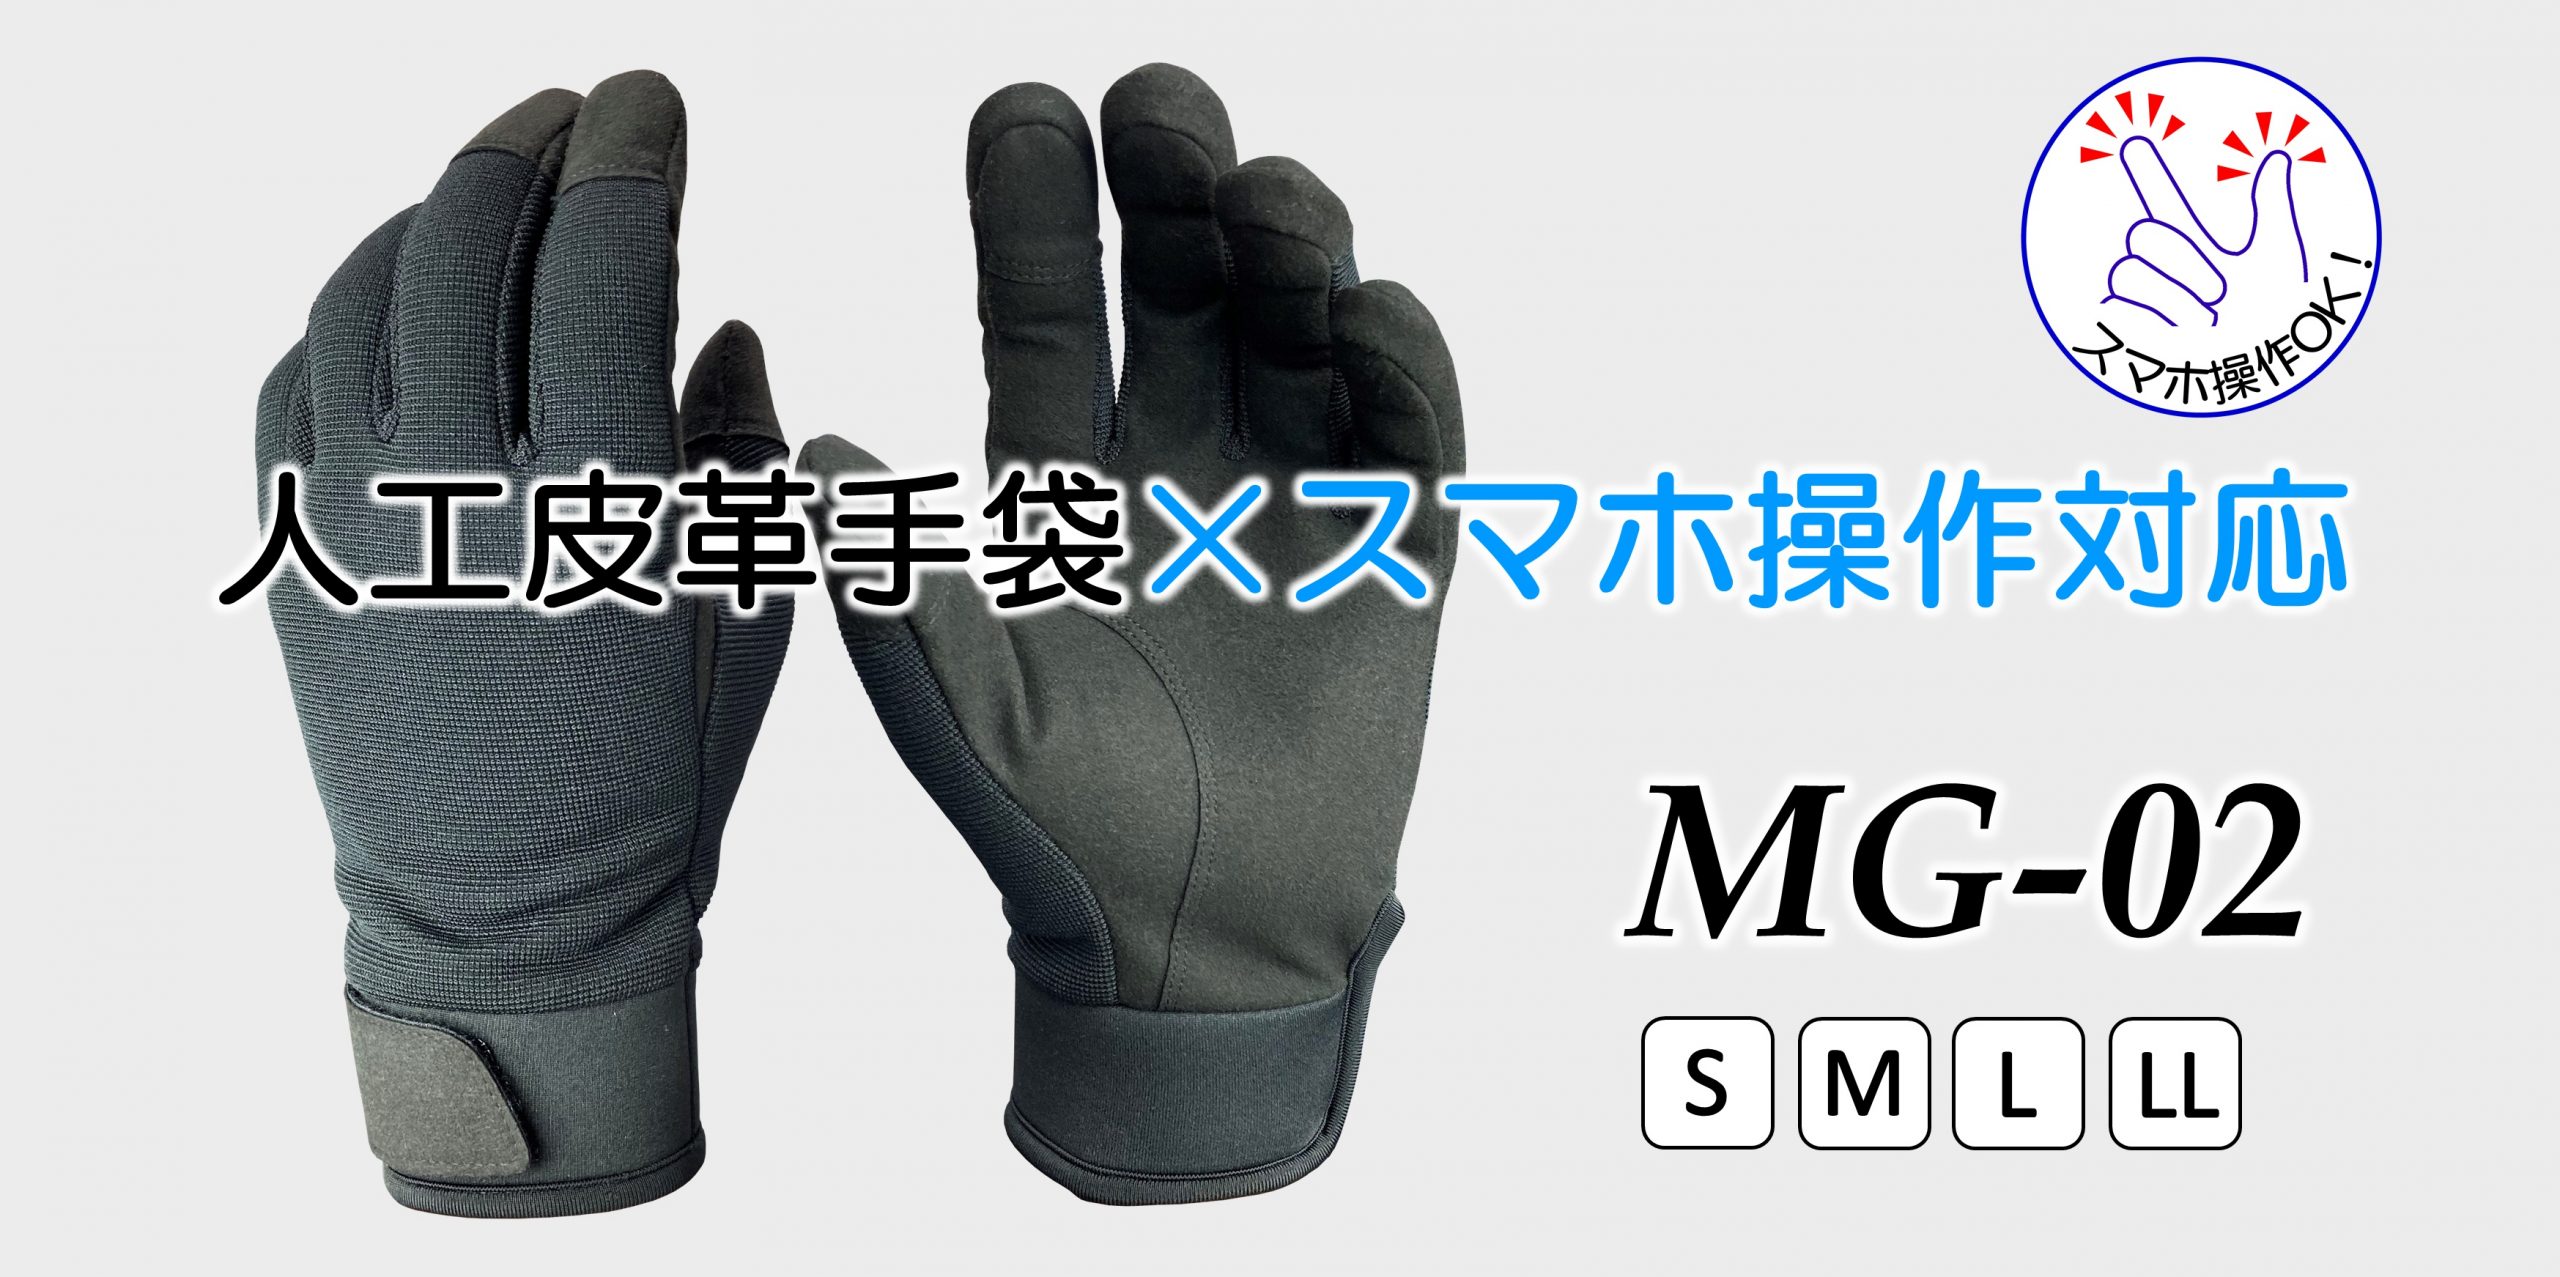 ウインセス株式会社 – ウインセス株式会社は精密作業、クリーン作業用手袋を専門とする作業手袋メーカーです。